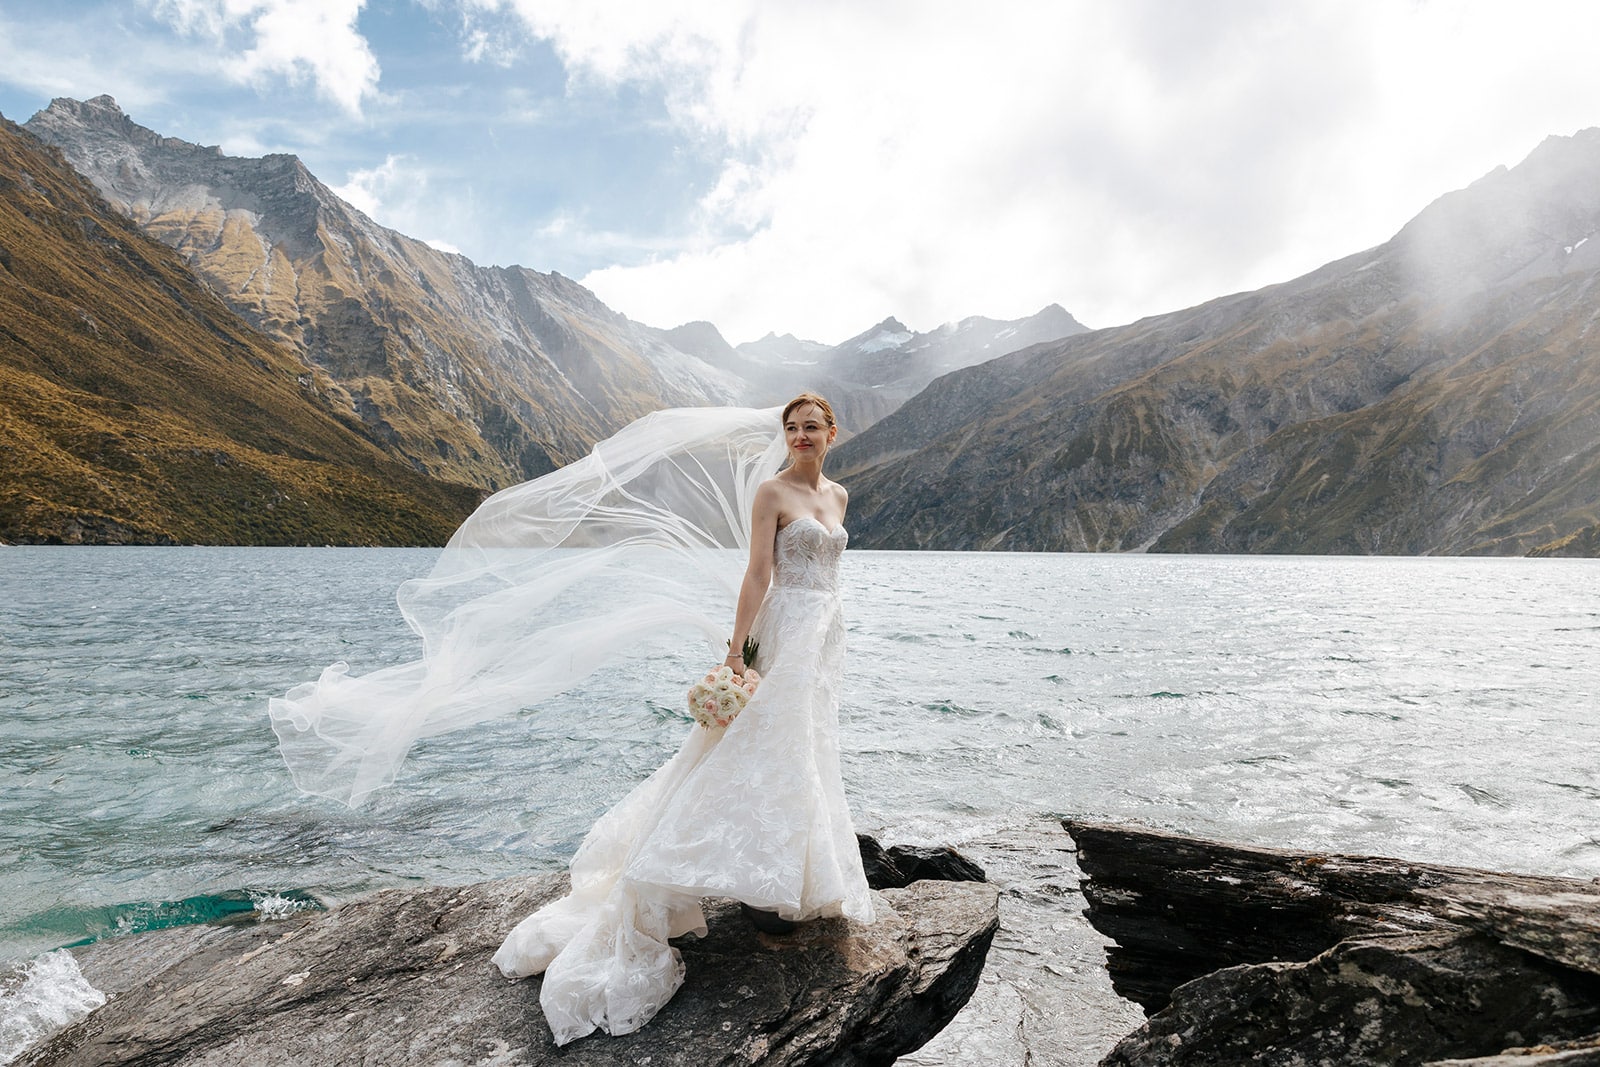 Heli wedding package at Lochnagar Queenstown New Zealand